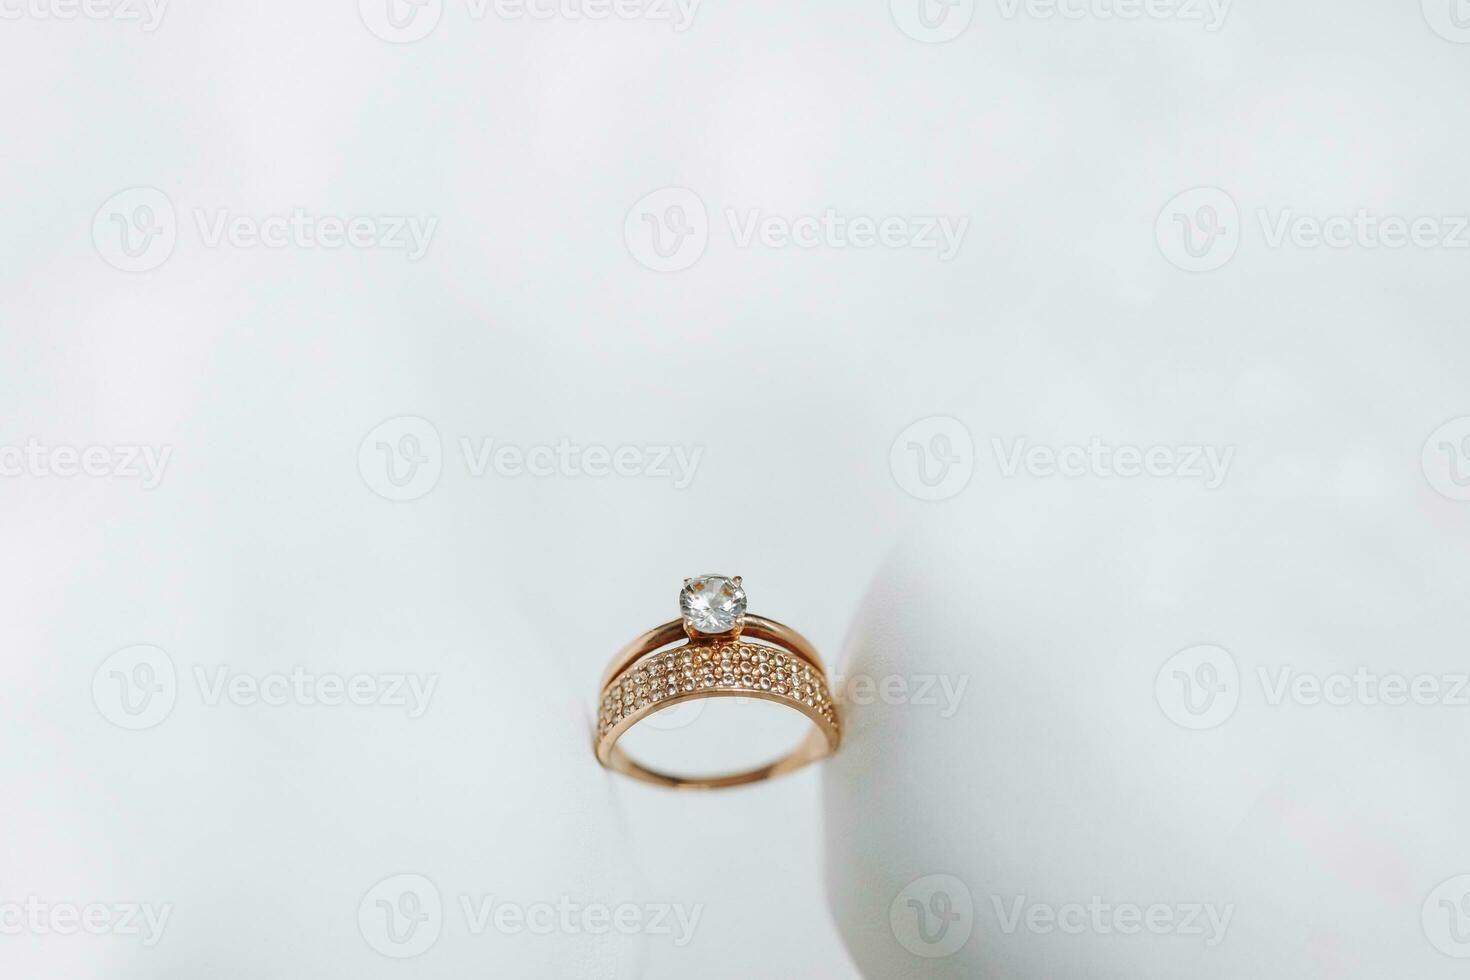 combiné or mariage bague décoré avec diamants. solitaire diamant engagement bague dans Jaune or avec une quatre dent réglage photo